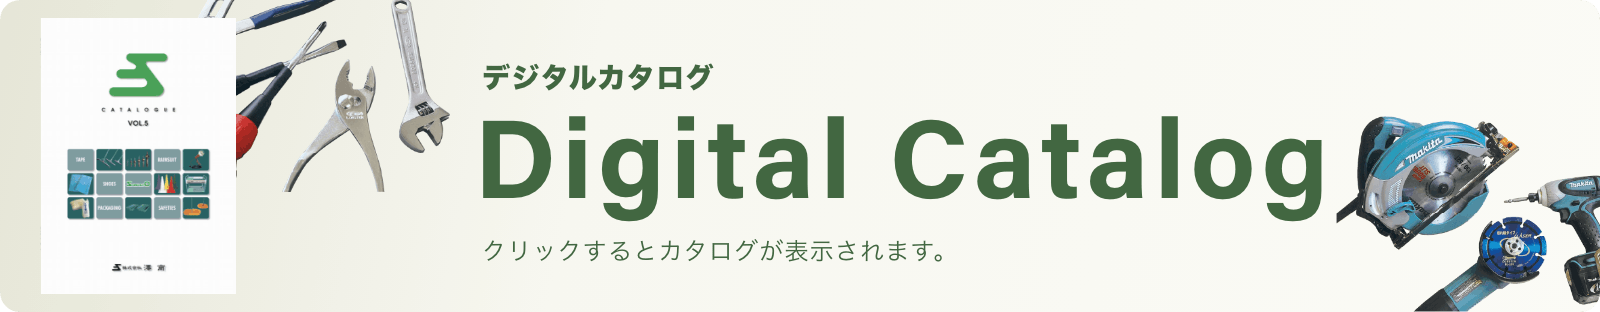 デジタルカタログ Digital Catalog クリックするとカタログが表示されます。